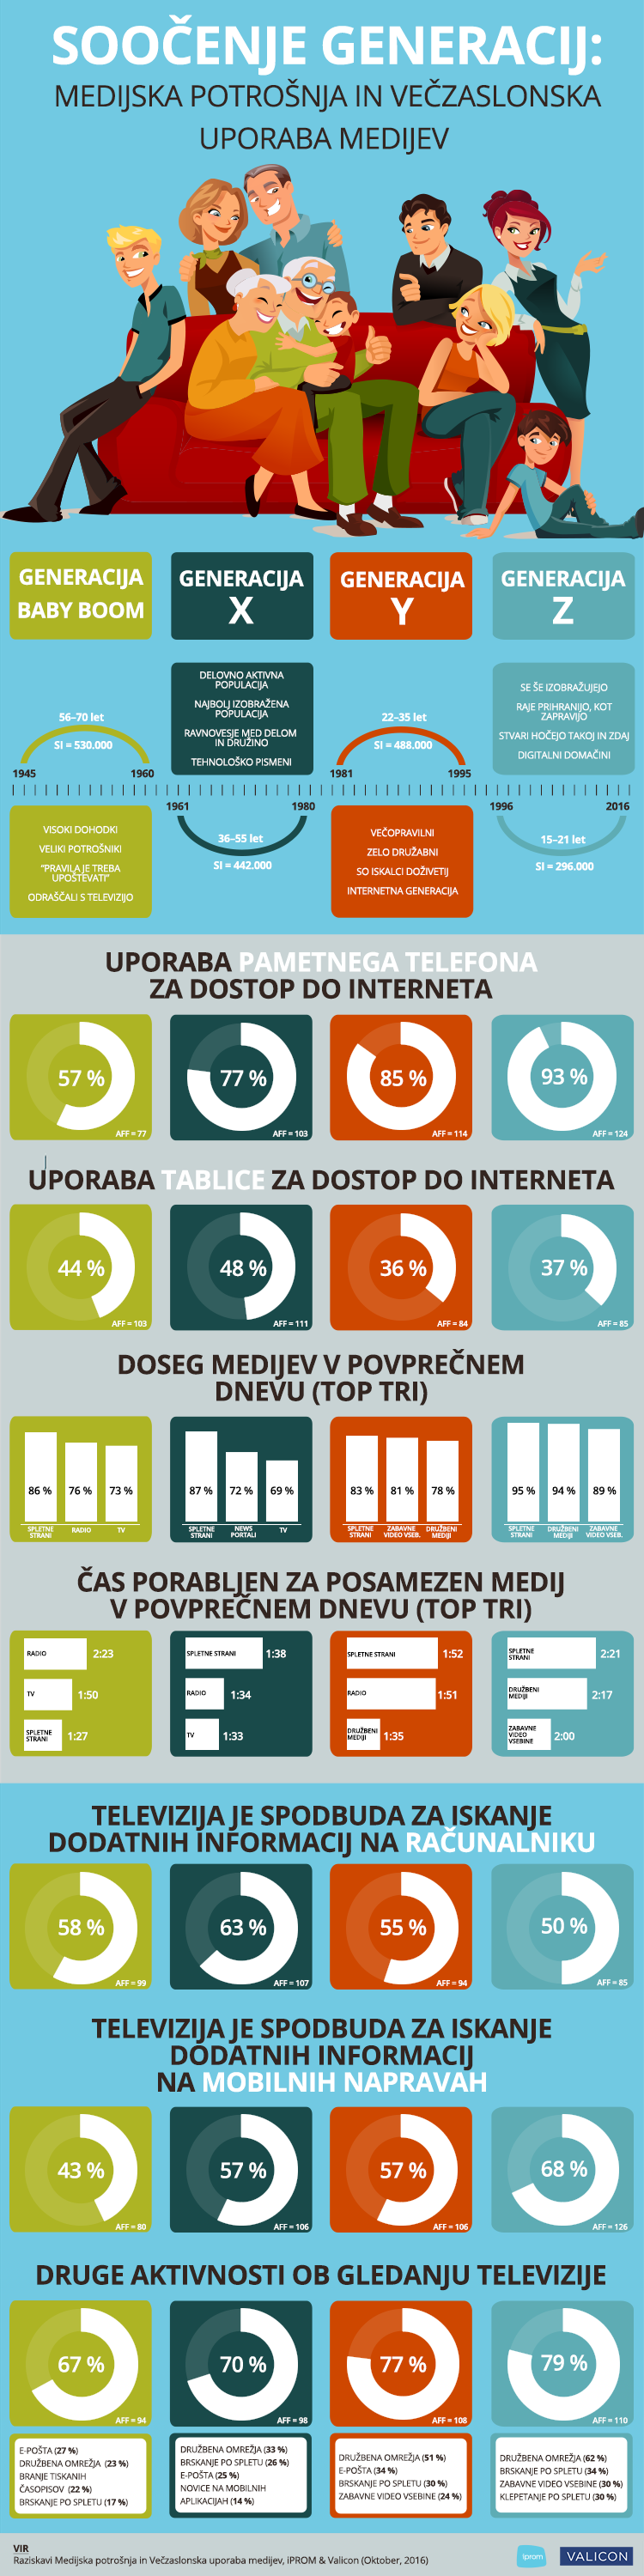 iPROM - Infografika - Medijska potrošnja